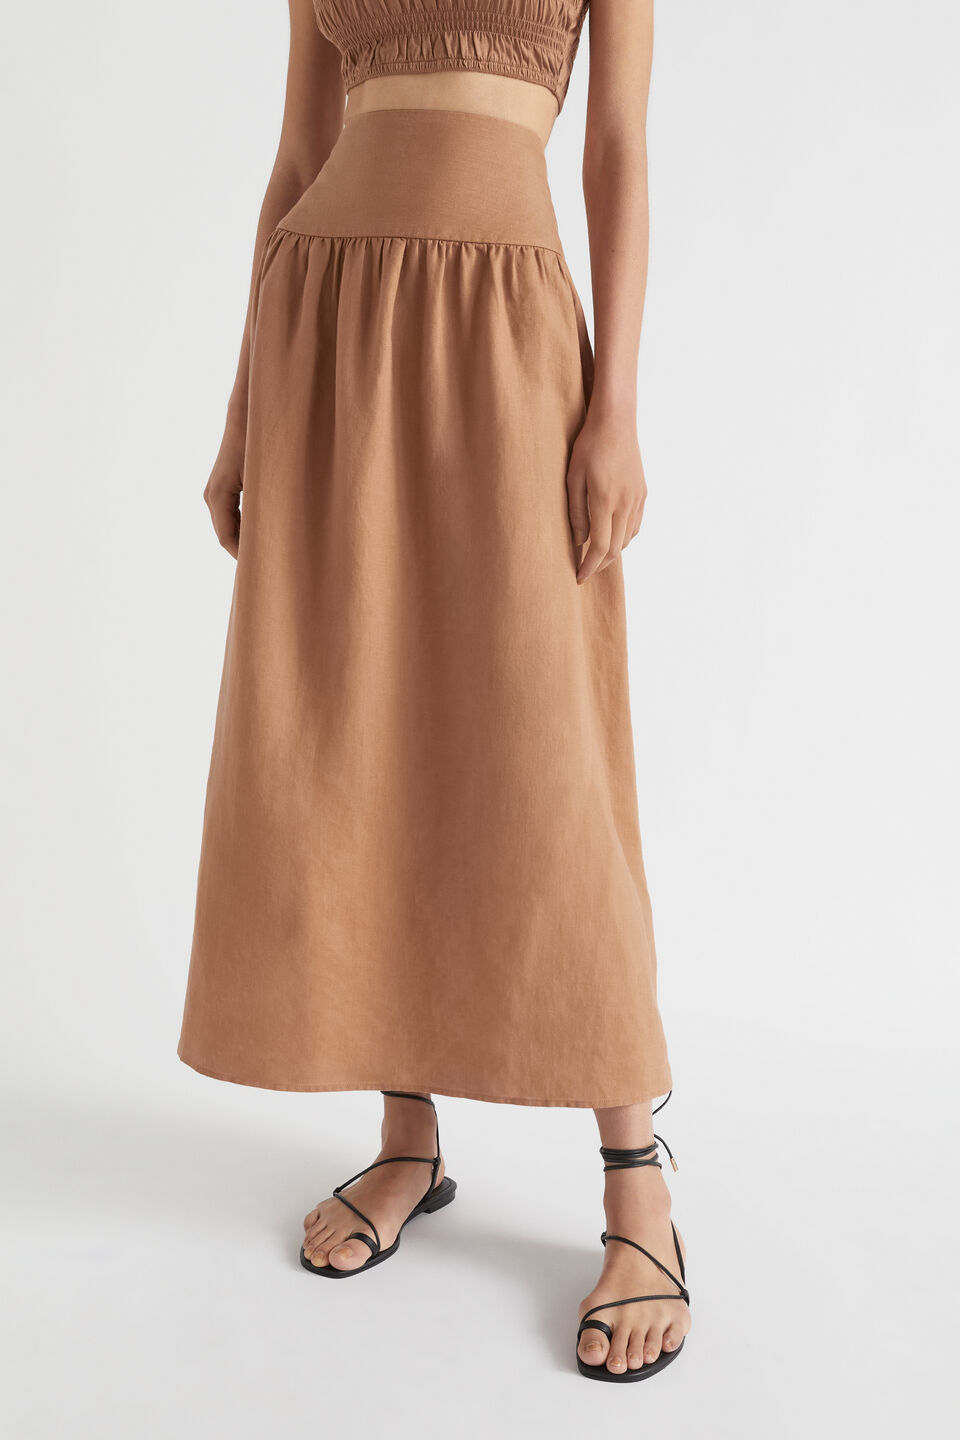 Core Linen Gathered Maxi Skirt  Auburn Brown